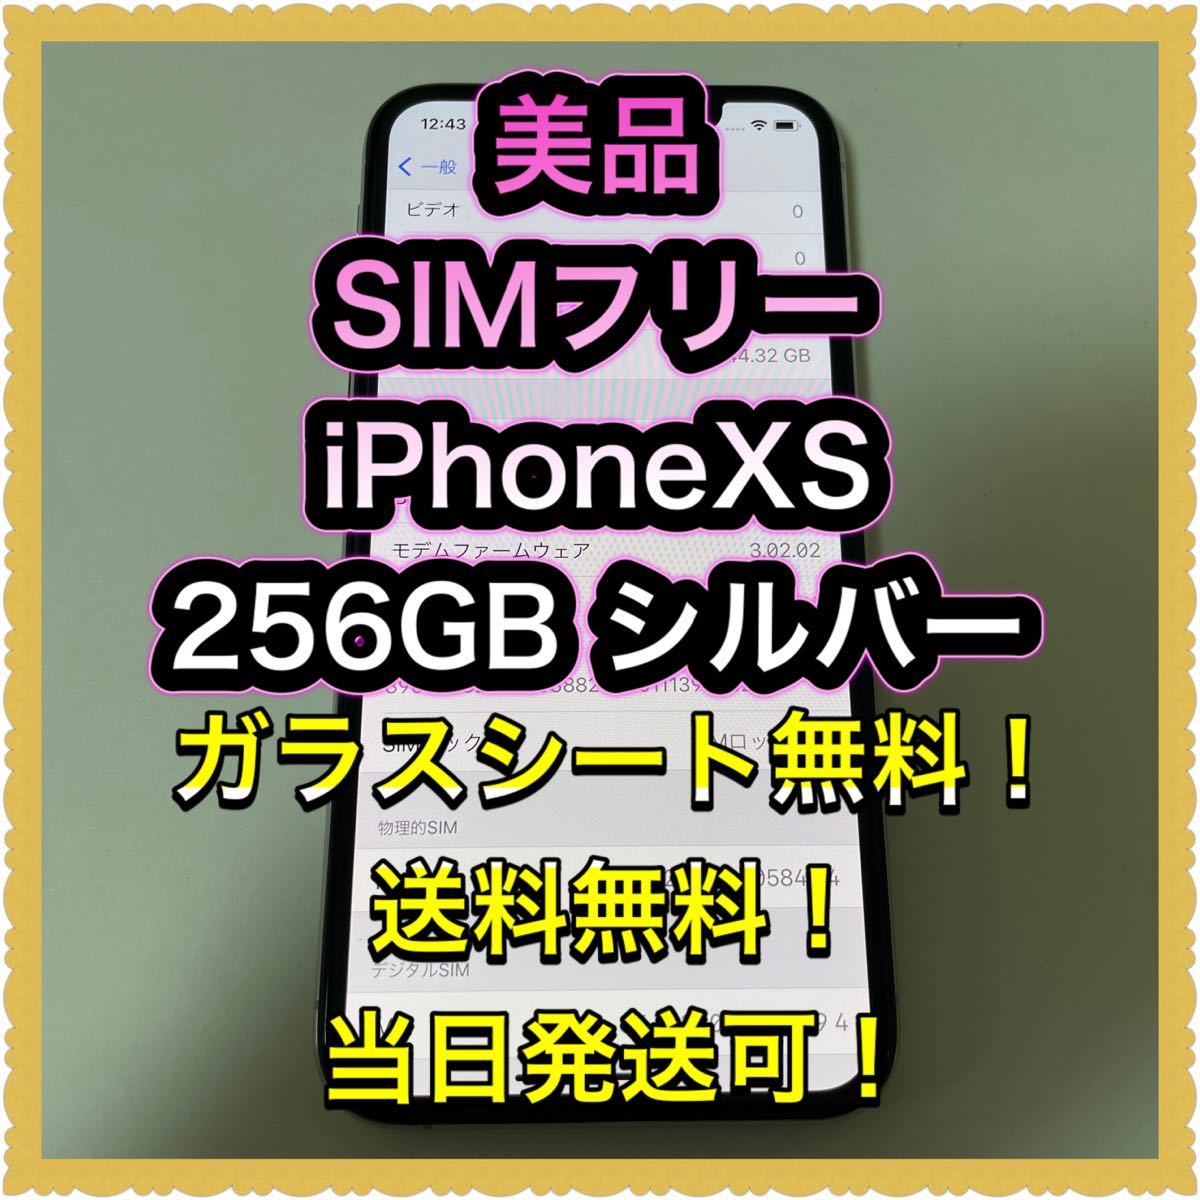 □美品SIMフリーiPhoneXS 256GB シルバー 判定◯ 残債なし□ kanika.ec